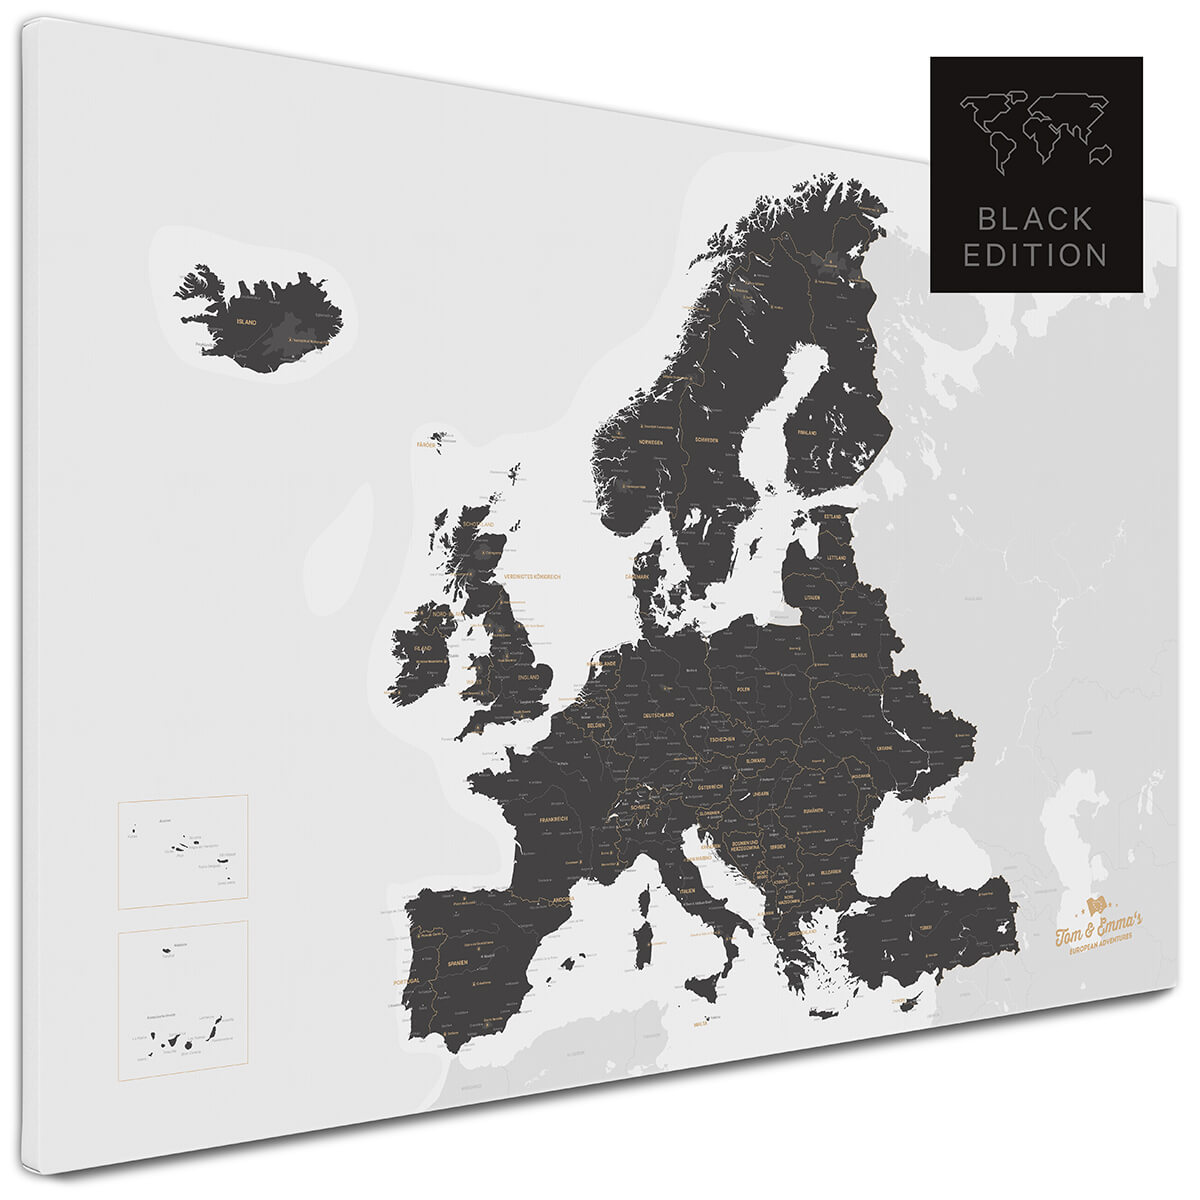 Europa-Karte als Pinnwand kaufen